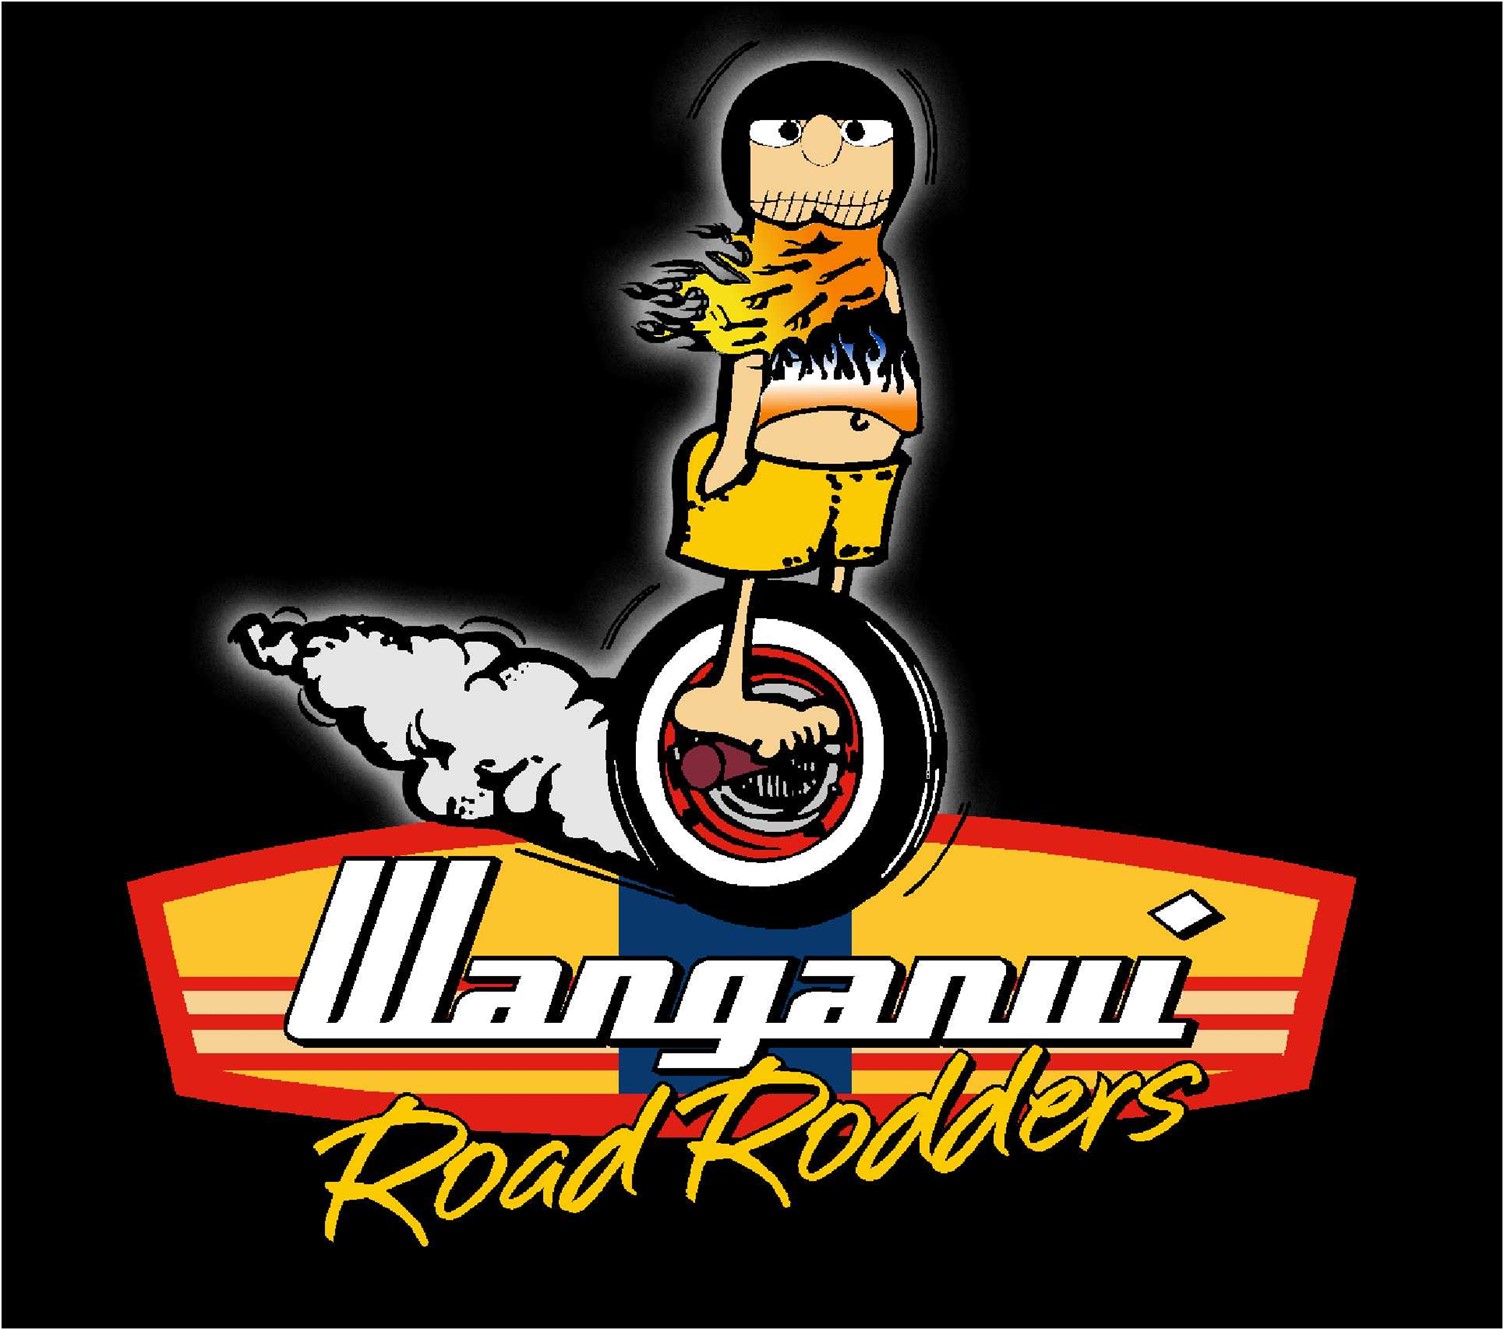 Wanganui Road Rodders - Rod Run 50th Anniversary